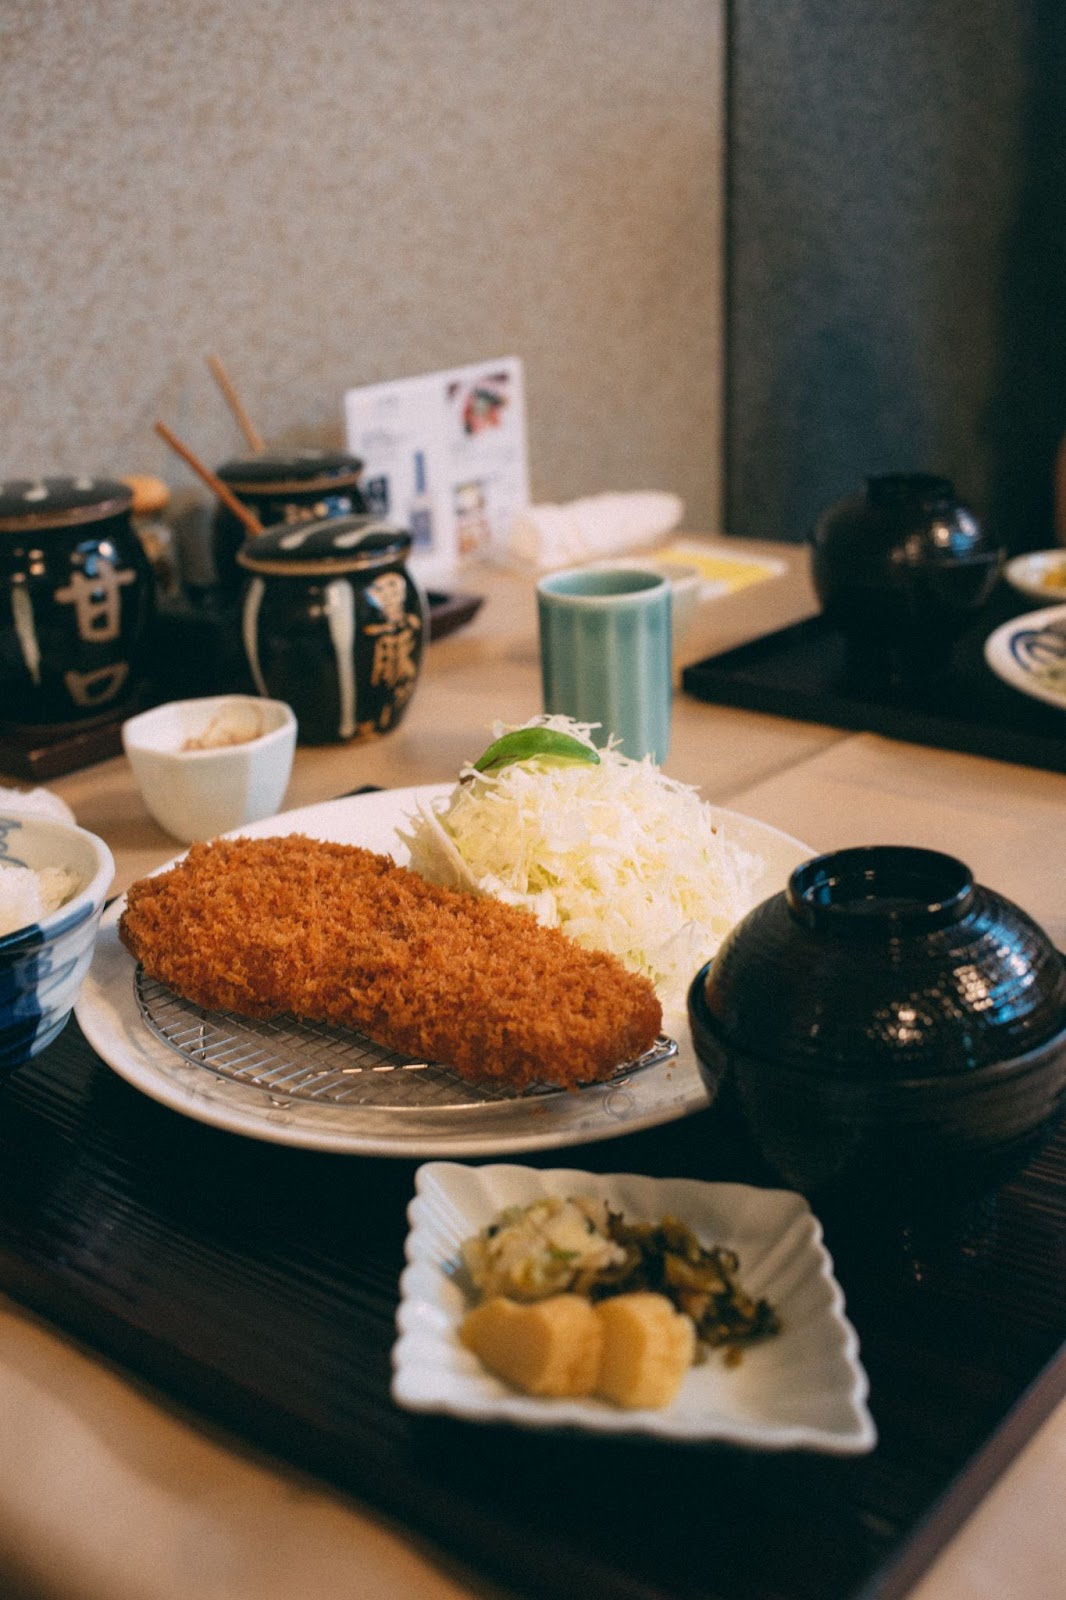 ส่วนประกอบของเซตอาหารญี่ปุ่น และเมนูยอดนิยมที่คนญี่ปุ่นนิยมรับประทาน